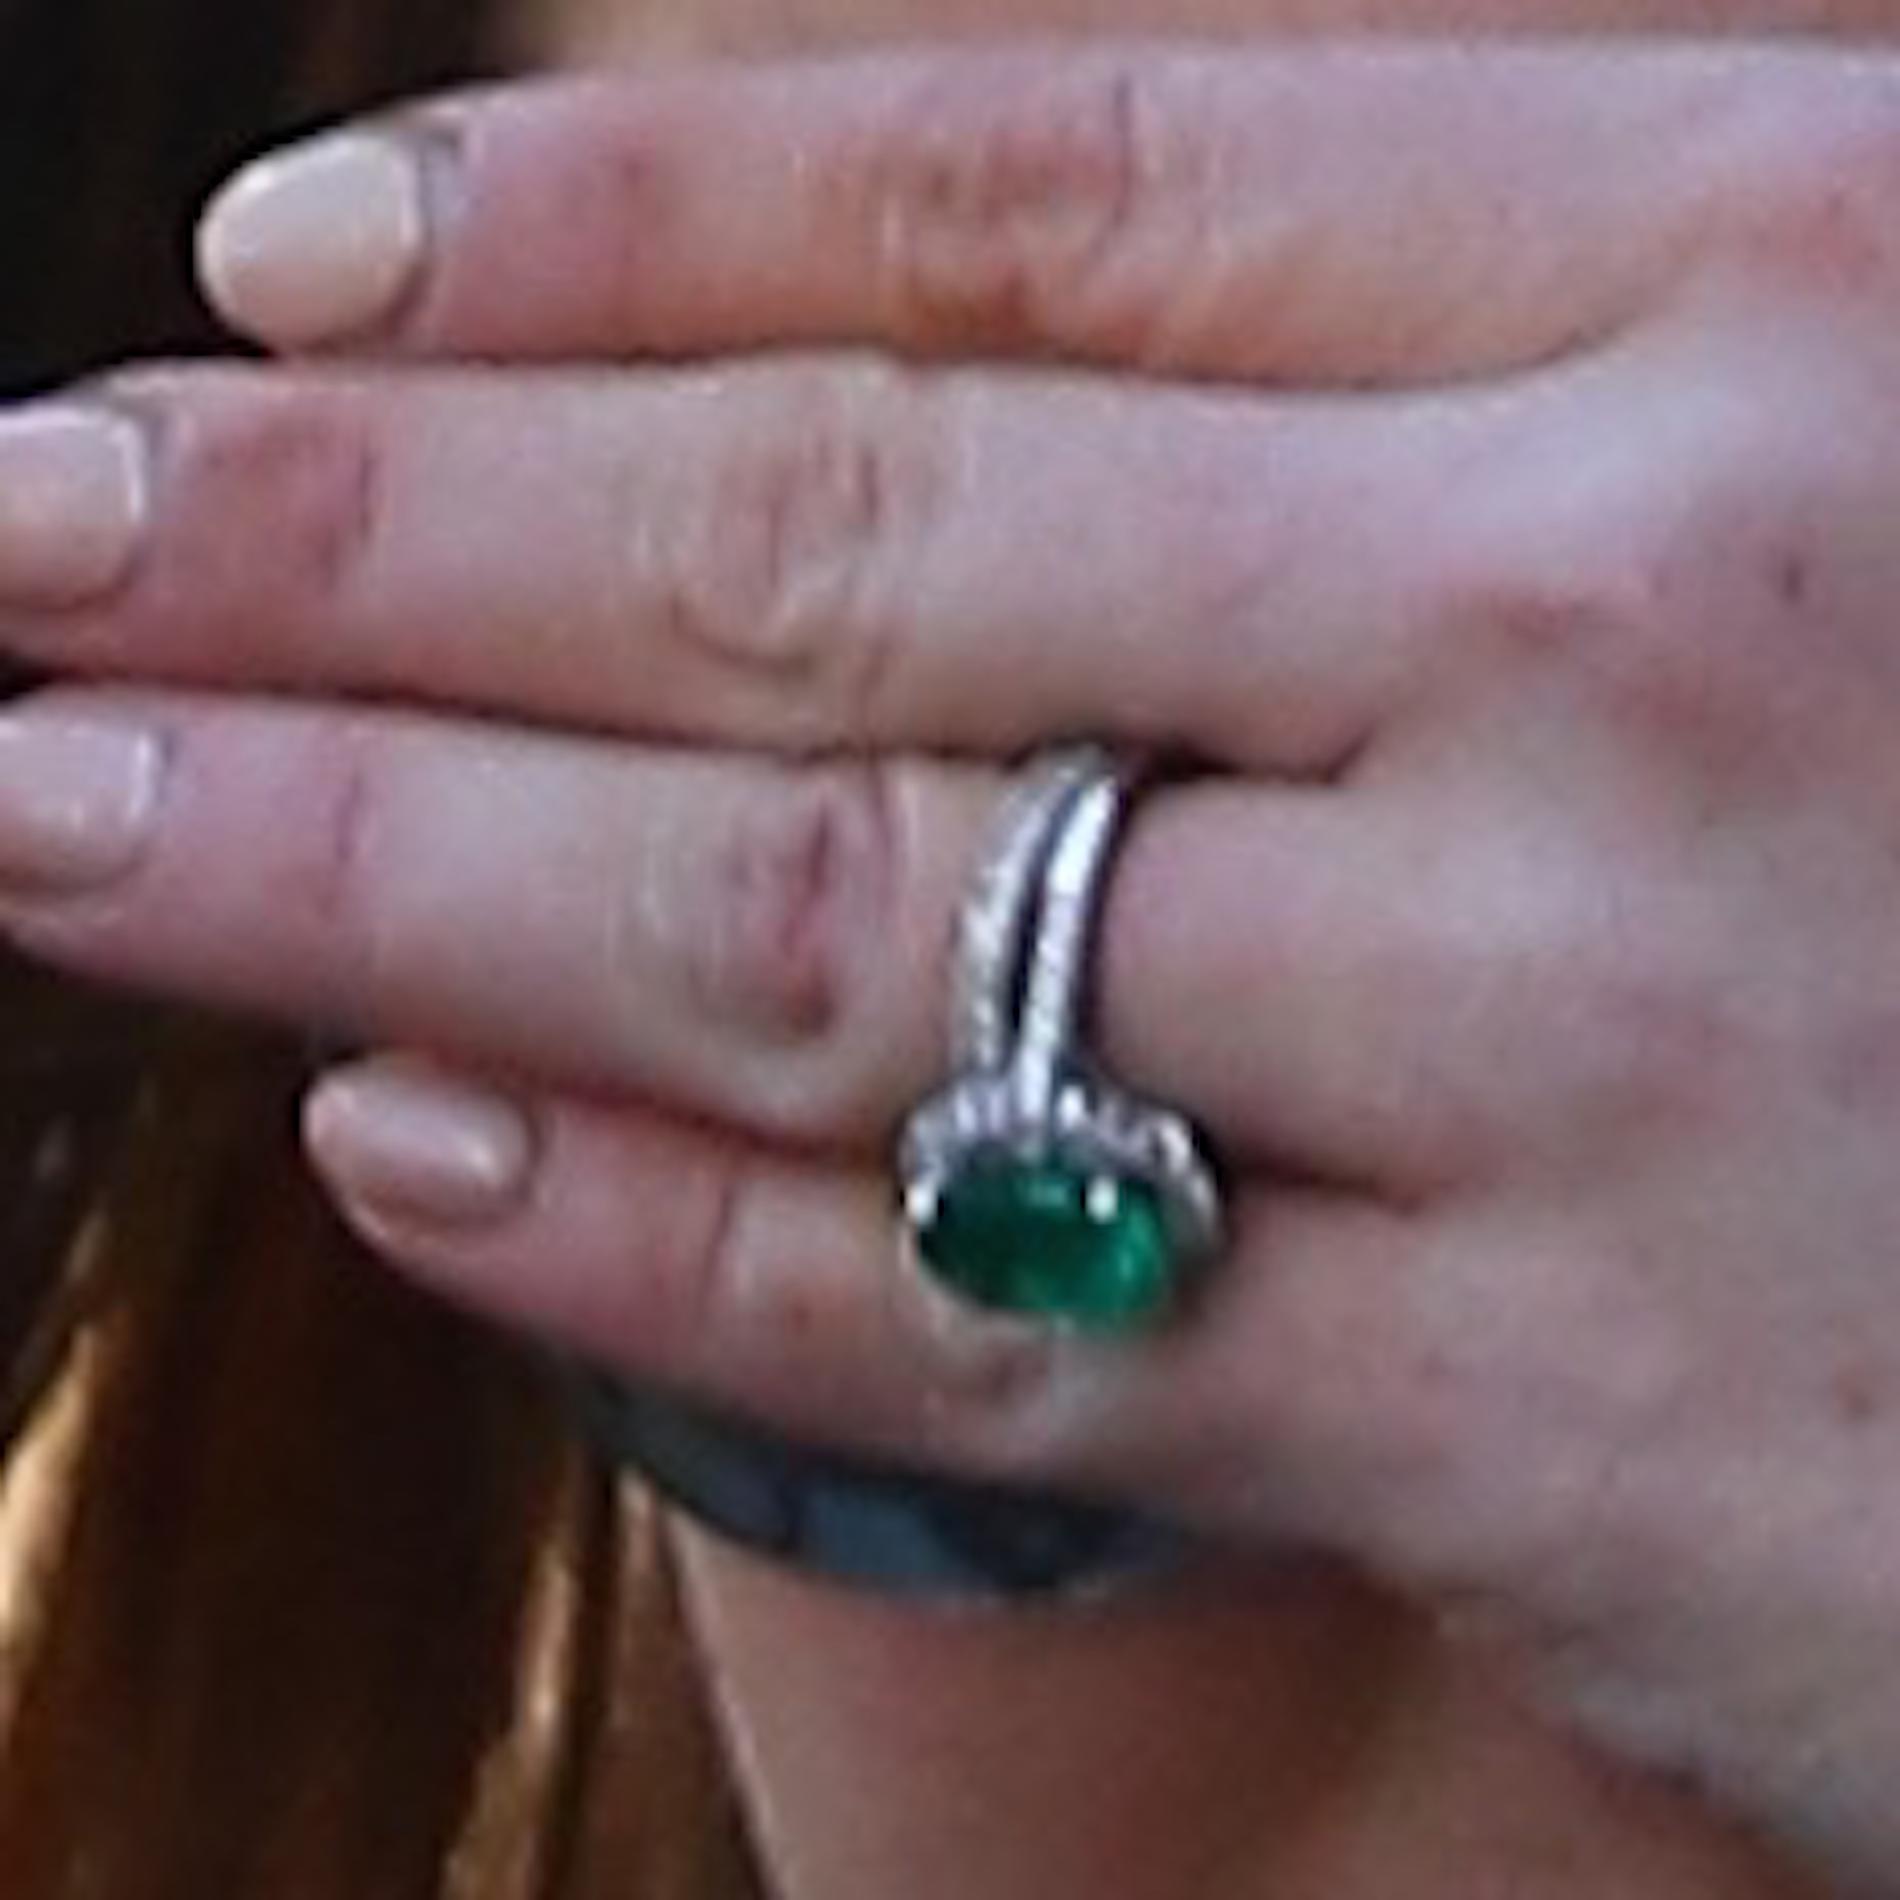 Nyligen pryddes samma finger av en ring.